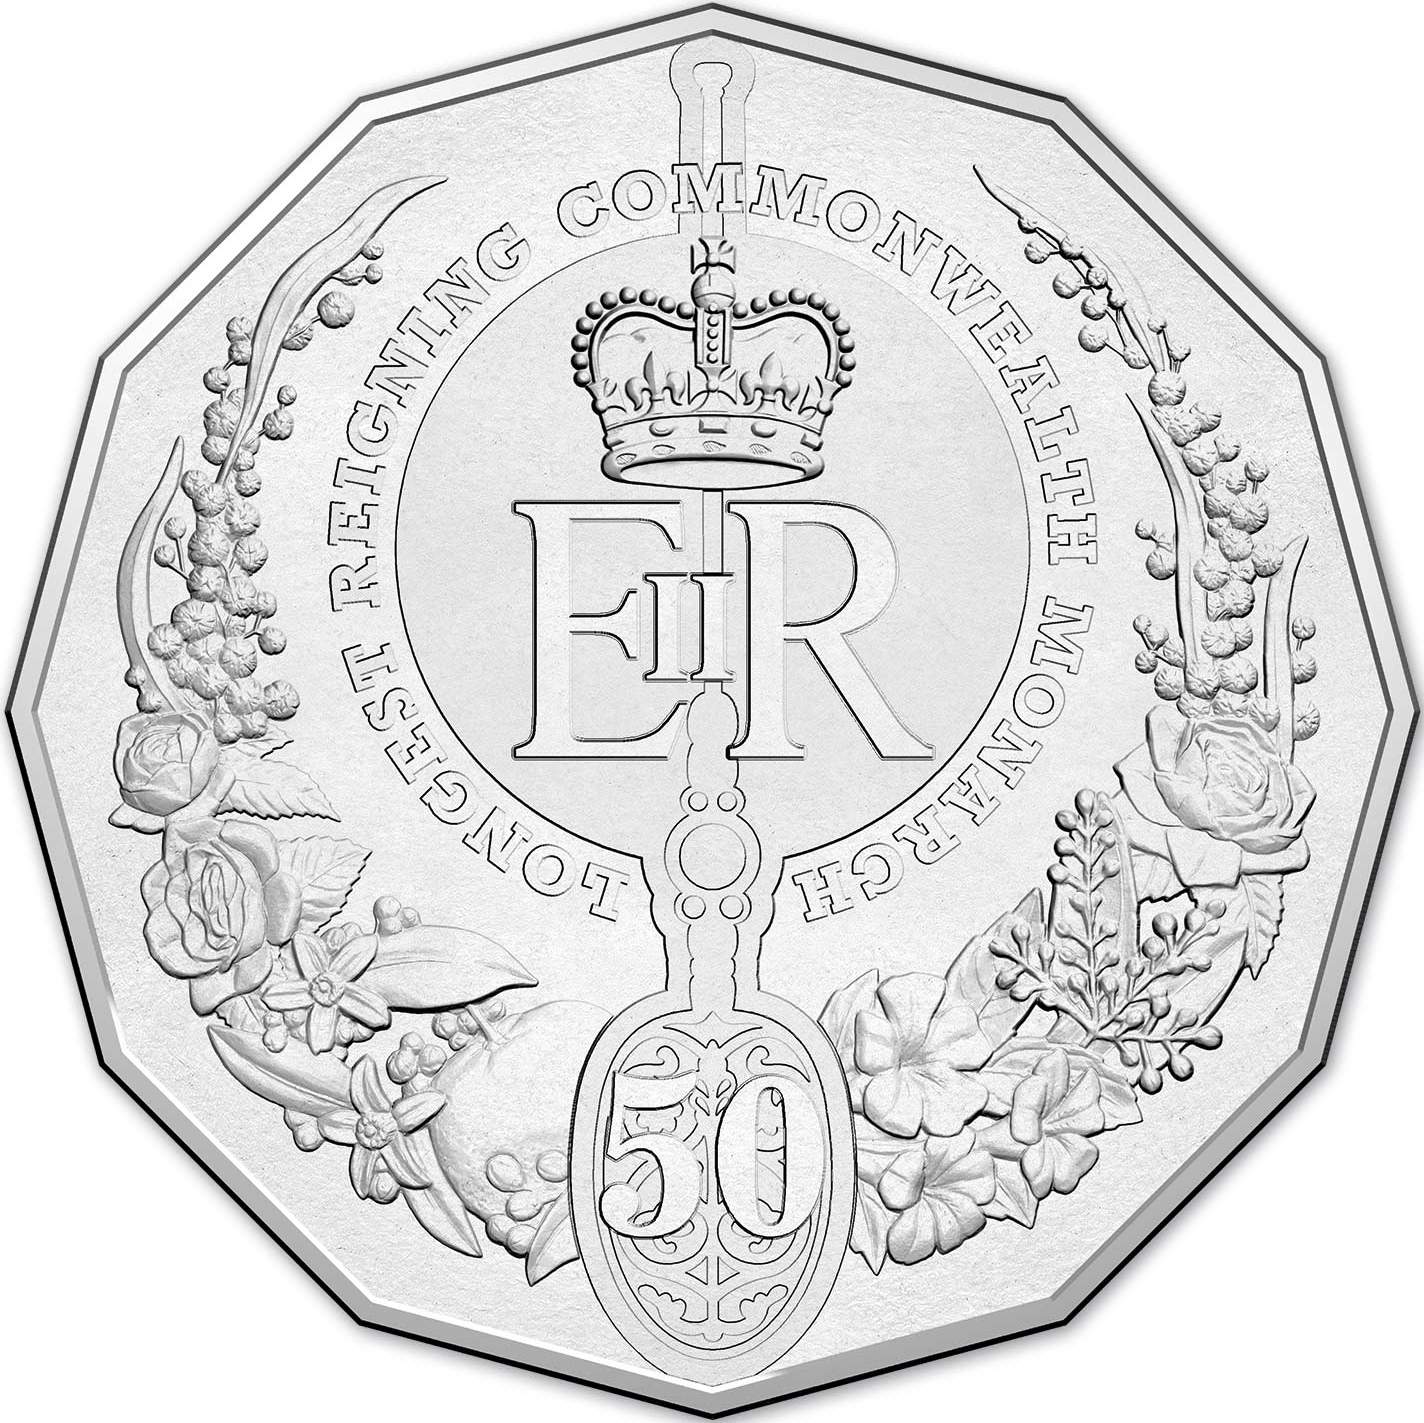 2015 Elizabeth II Longest Reigning Commonwealth Monarch Design (image courtesy www.ramint.gov.au)